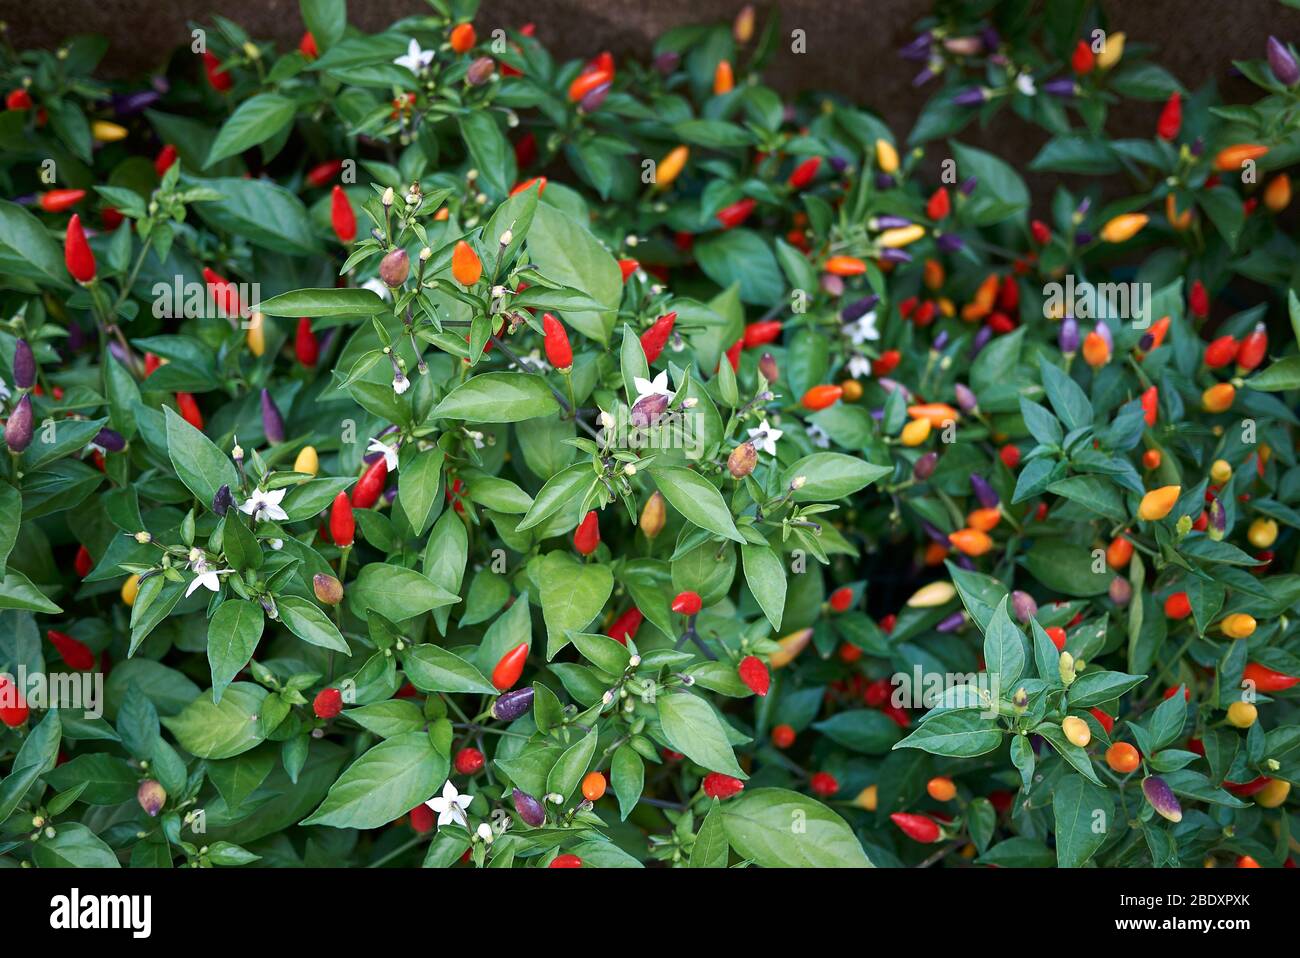 Capsicum annuum, ornamental peppers Stock Photo